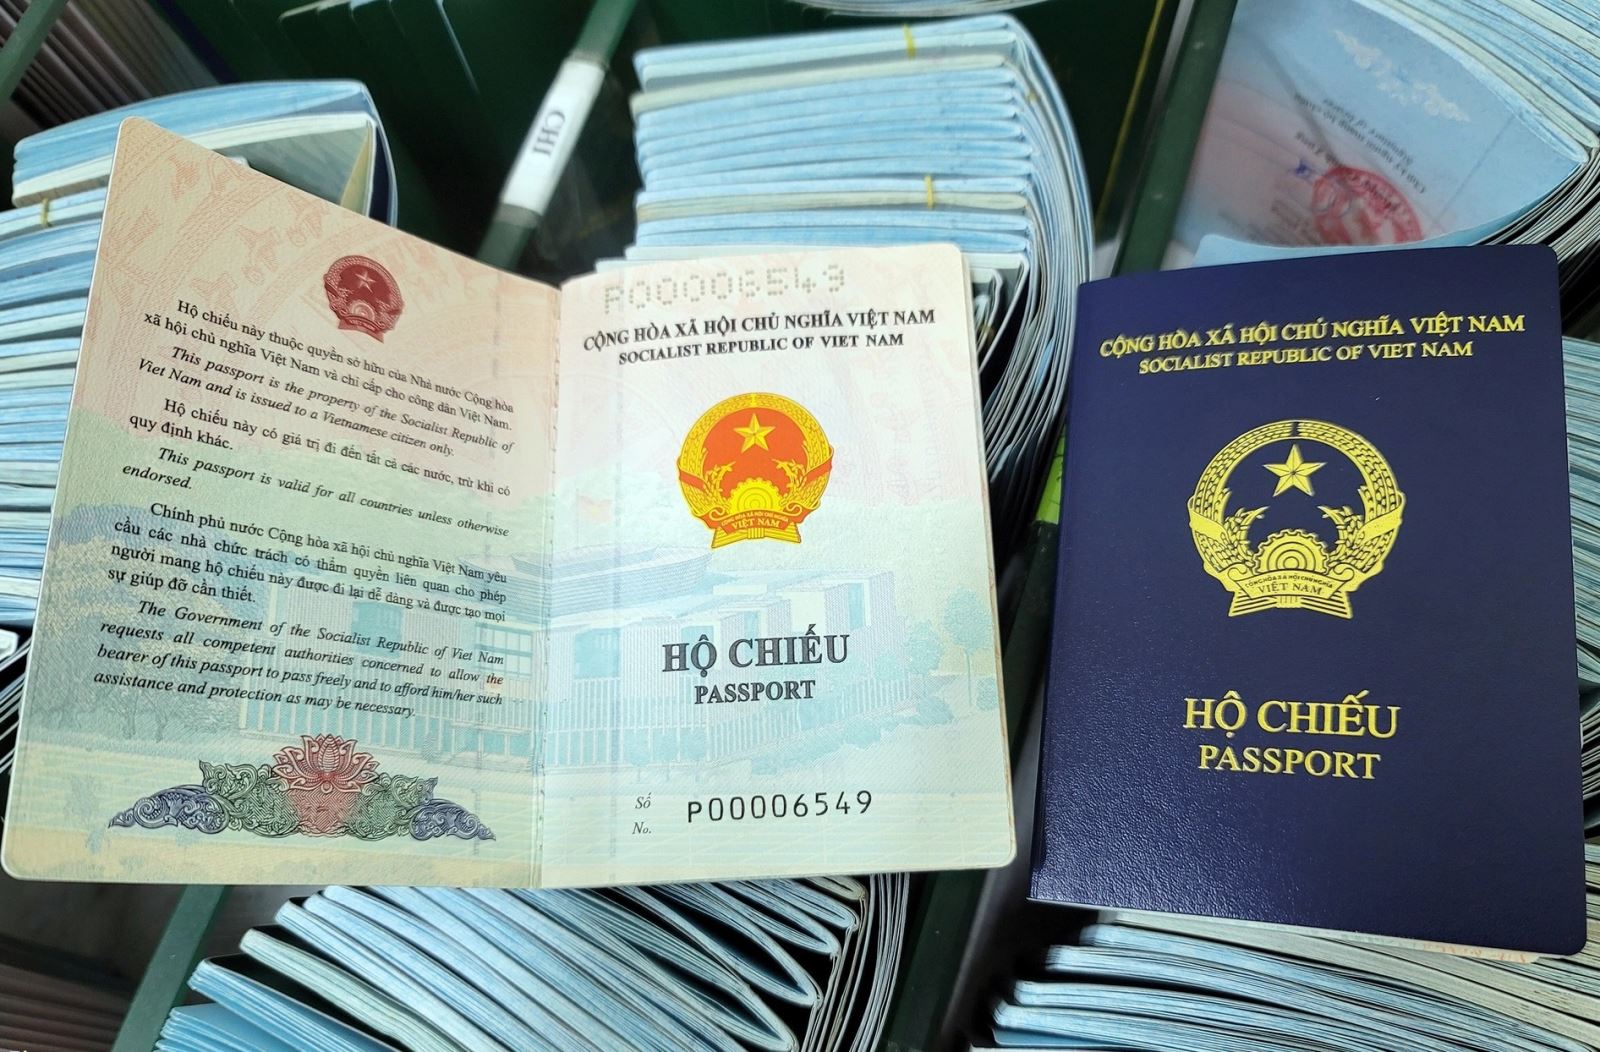 Chính sách mới về hộ chiếu sẽ giúp người dân nhanh chóng và dễ dàng làm hộ chiếu, giải quyết các vấn đề liên quan đến xuất nhập cảnh một cách hiệu quả và tiện lợi.